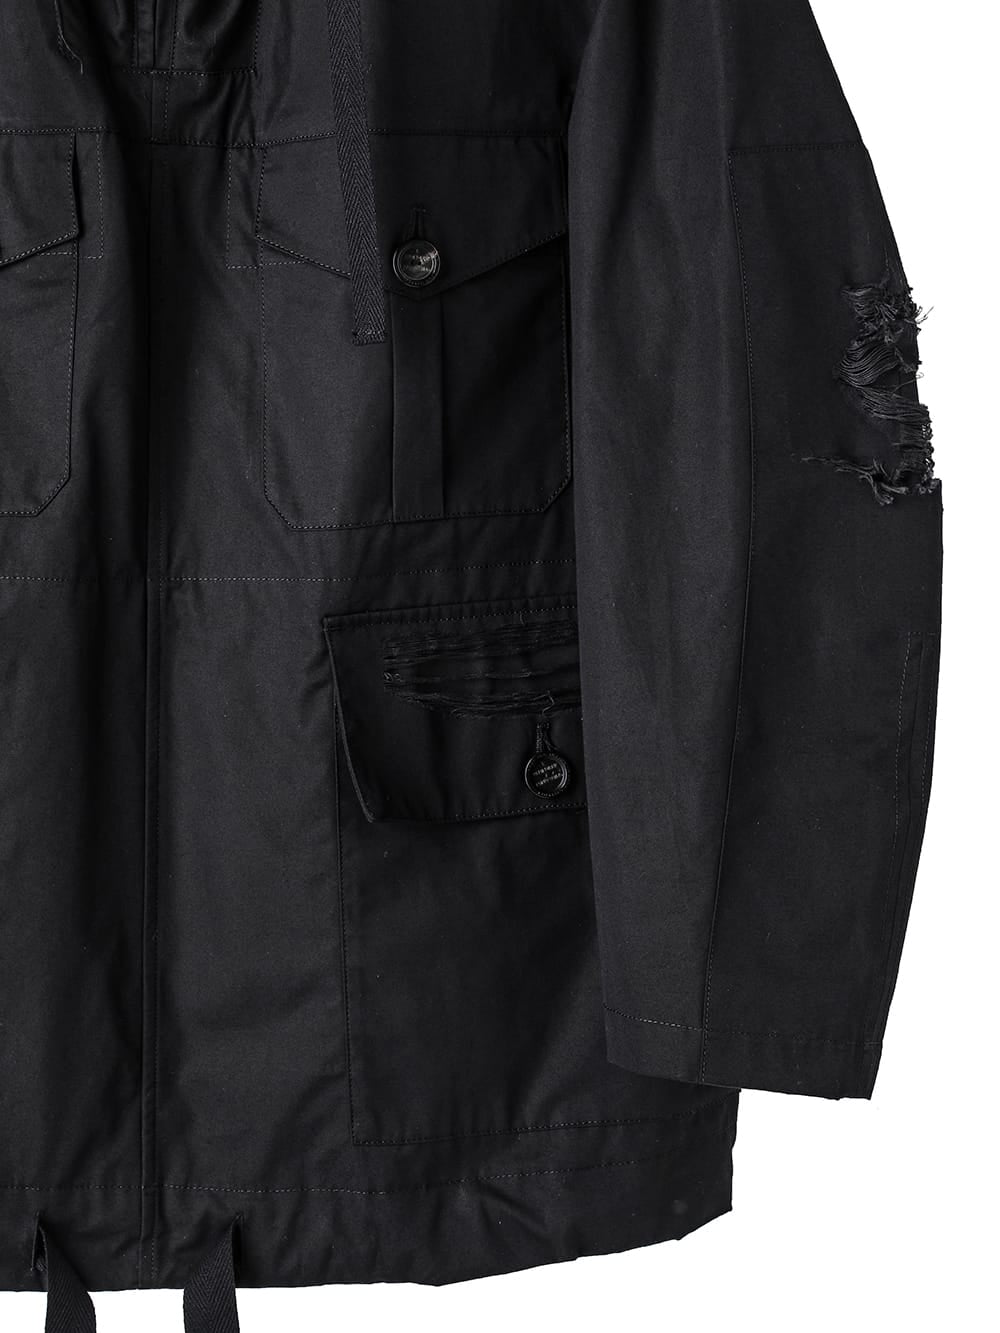 back gusset sleeve military anorak jacket.(clash)